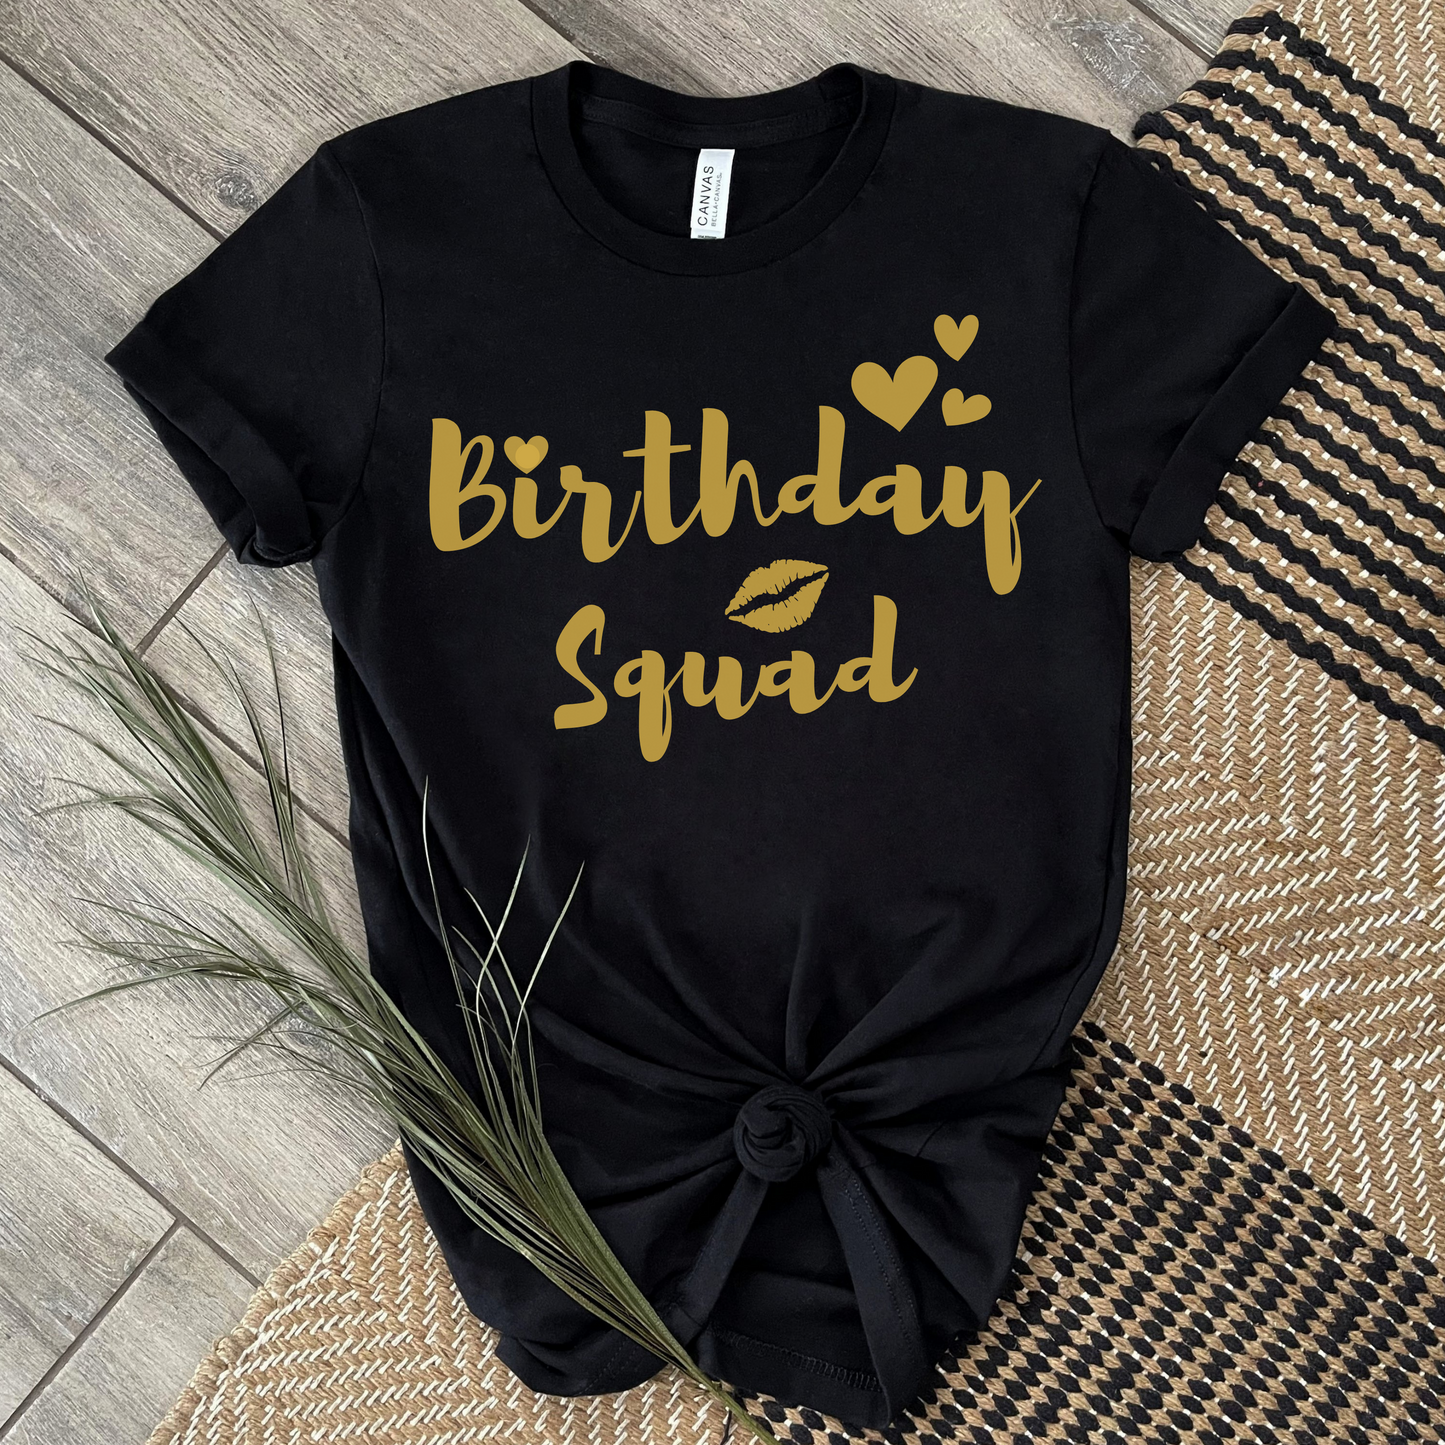 Birthday Squad T-shirt, Ladies t-shirt